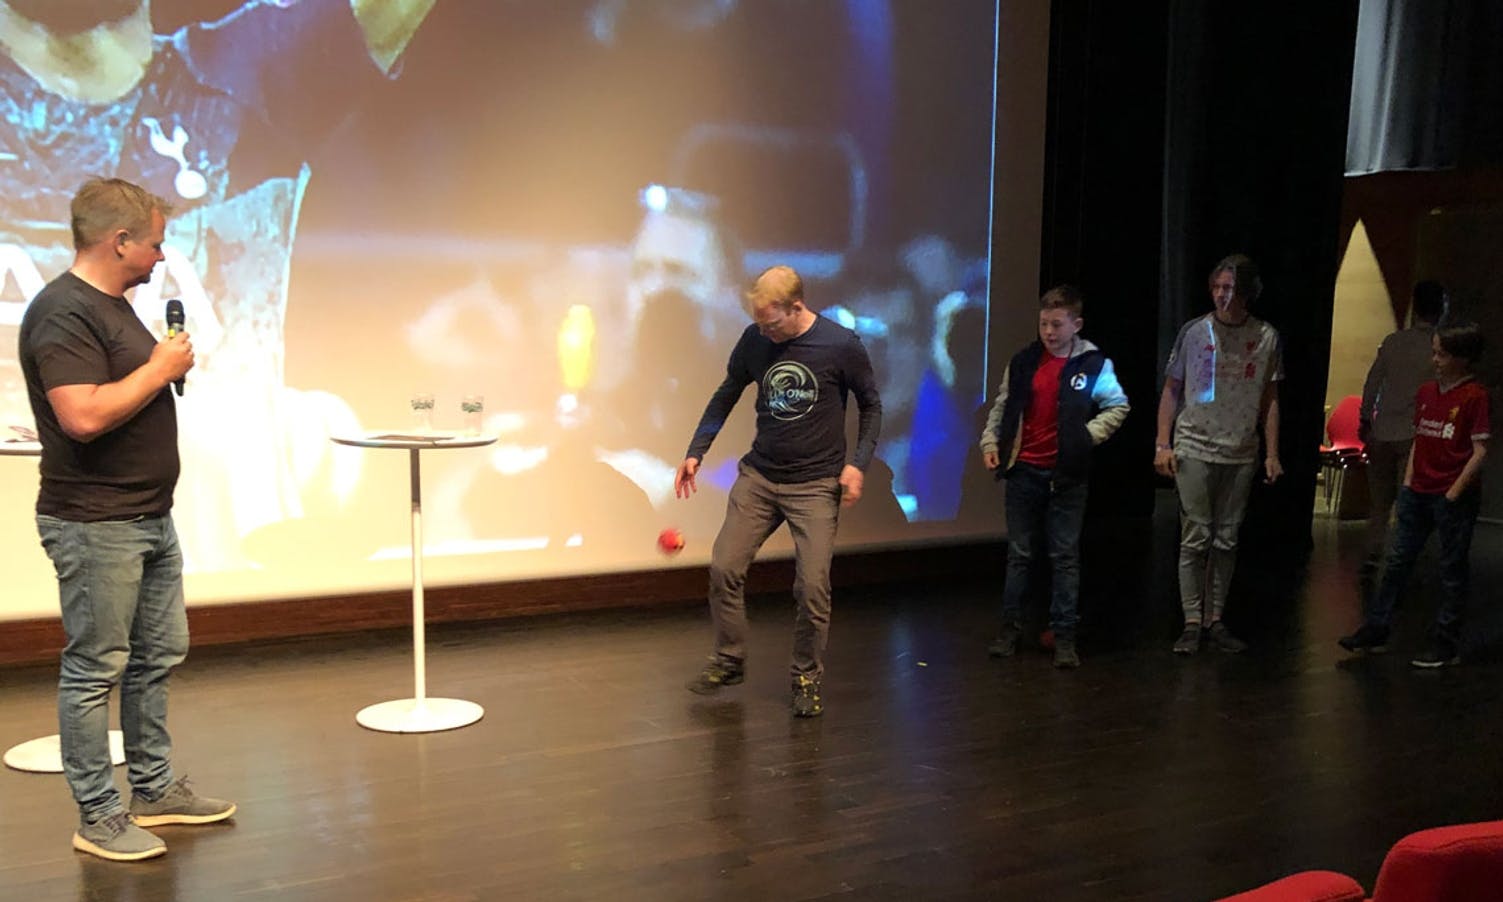 Fire publikummarar fekk prøva seg i triksekonkurranse. (Foto: KVB)